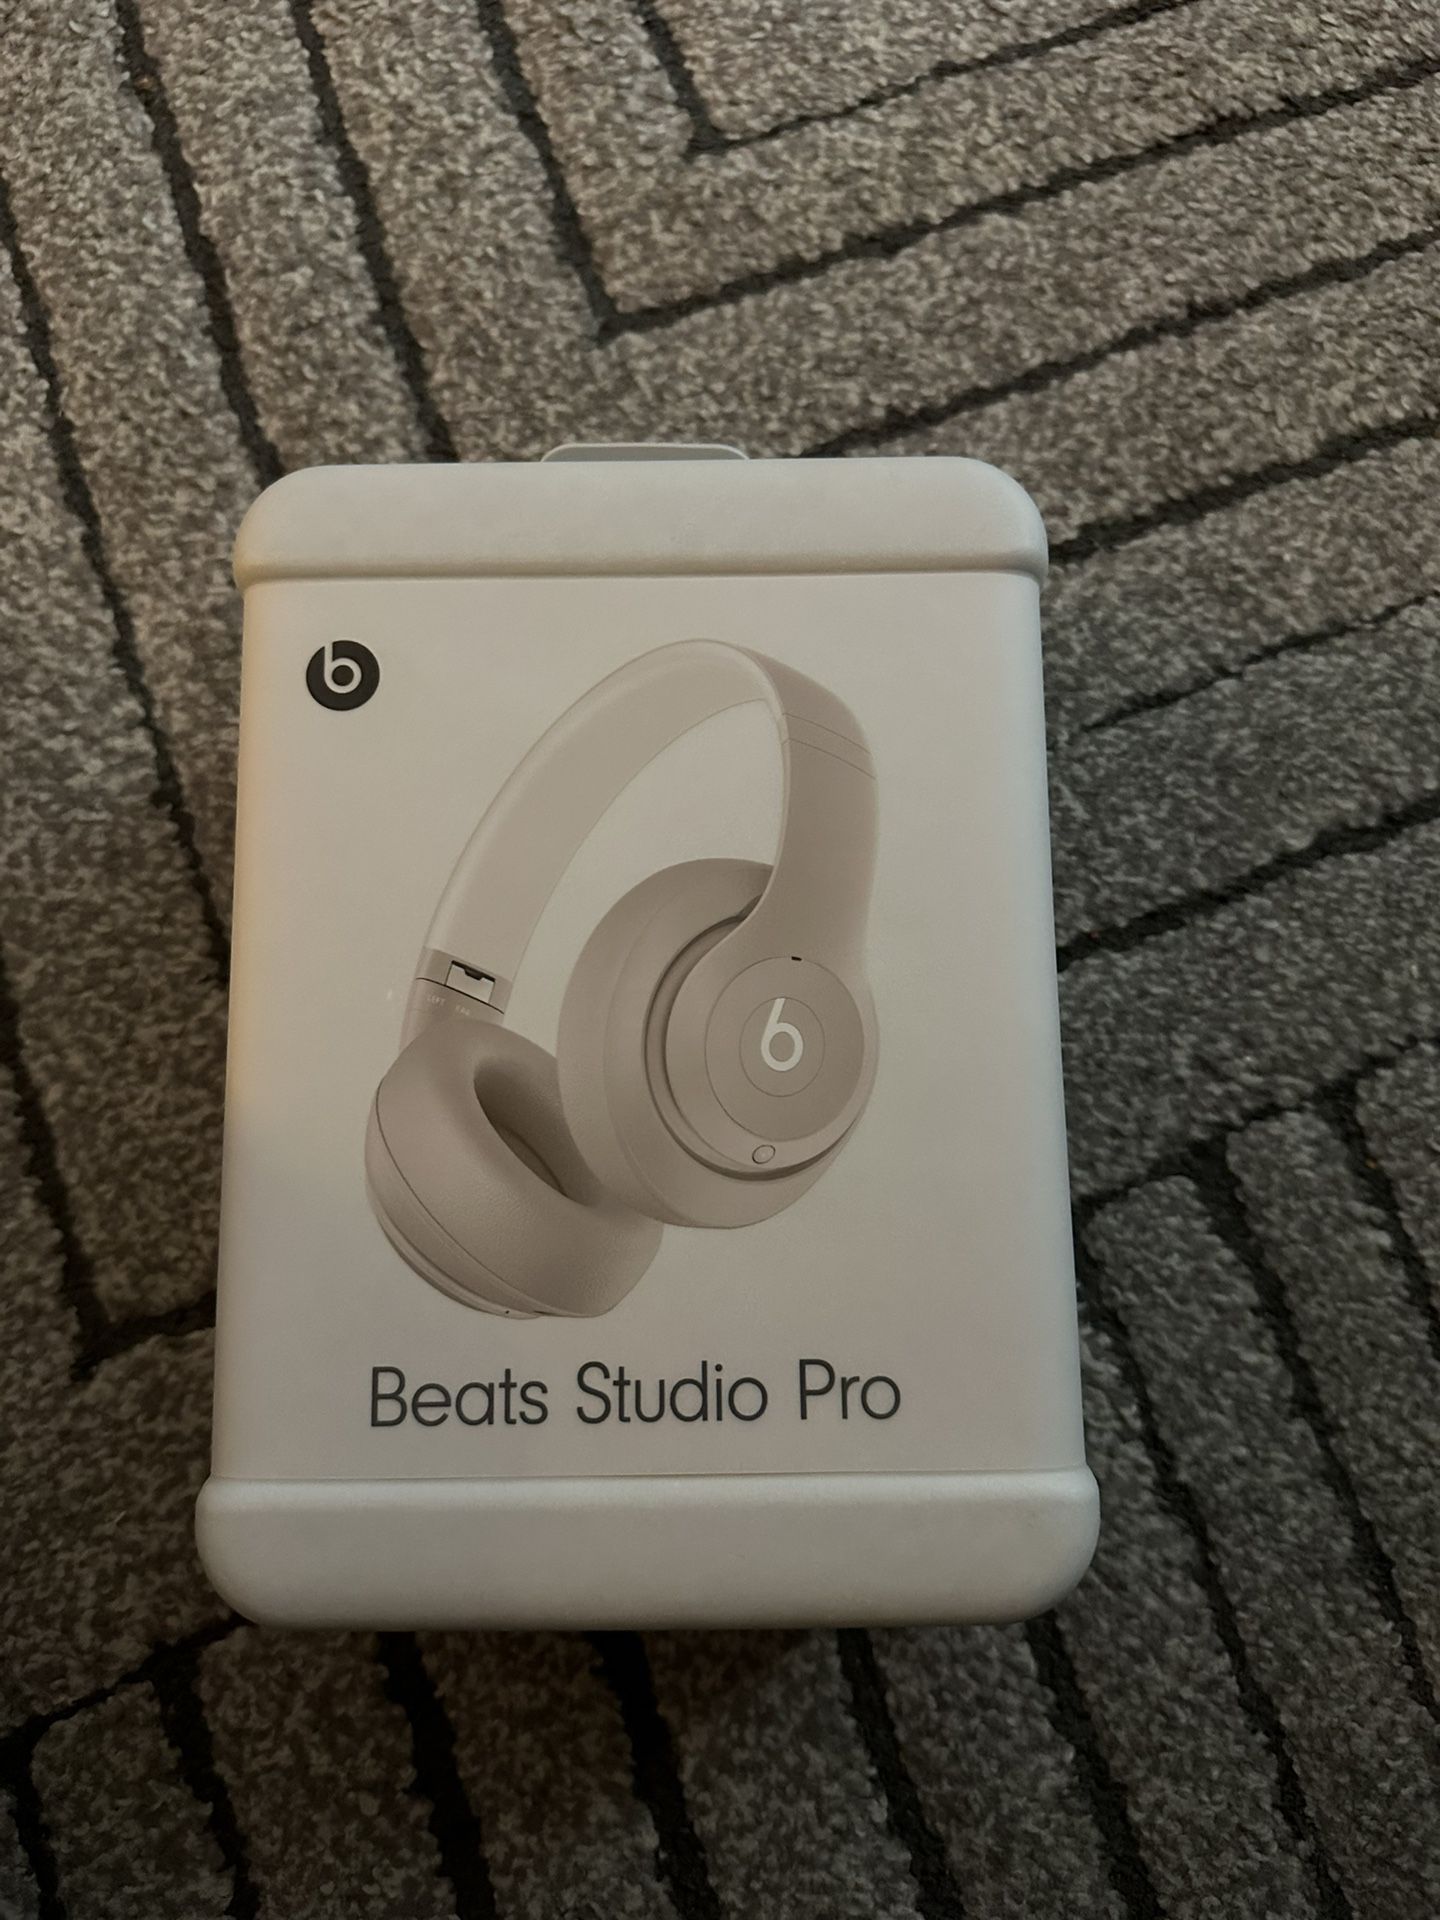 Beats Studio Pros